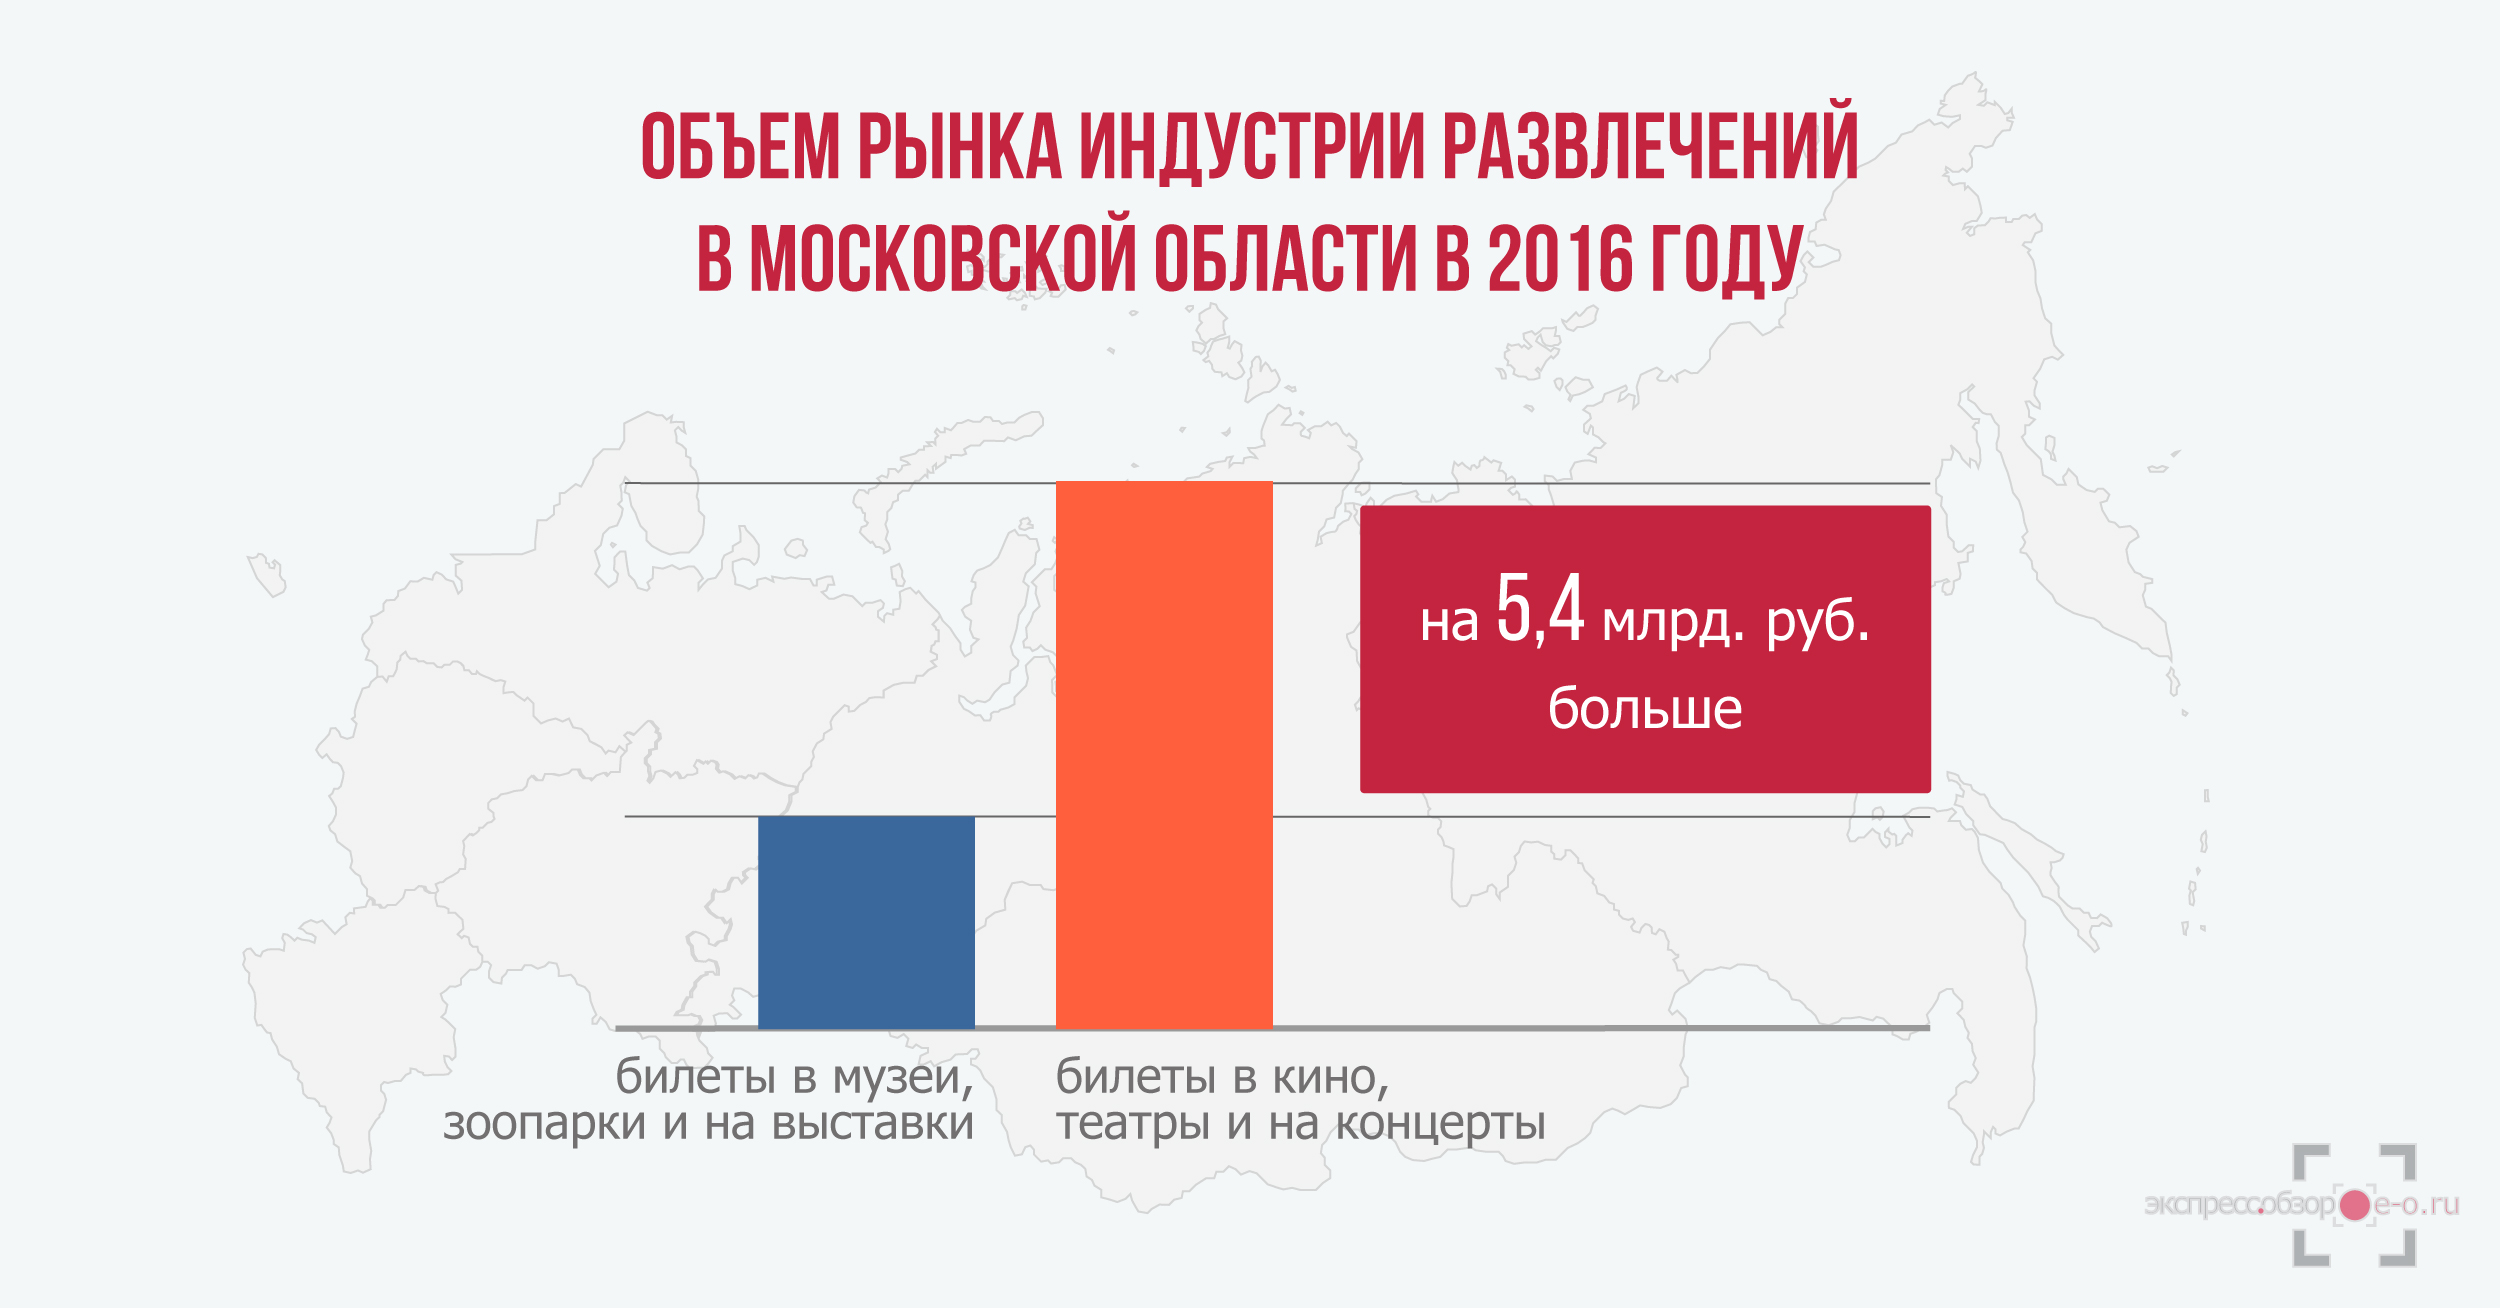 объем рынка индустрии развлечений в России в 2016 году